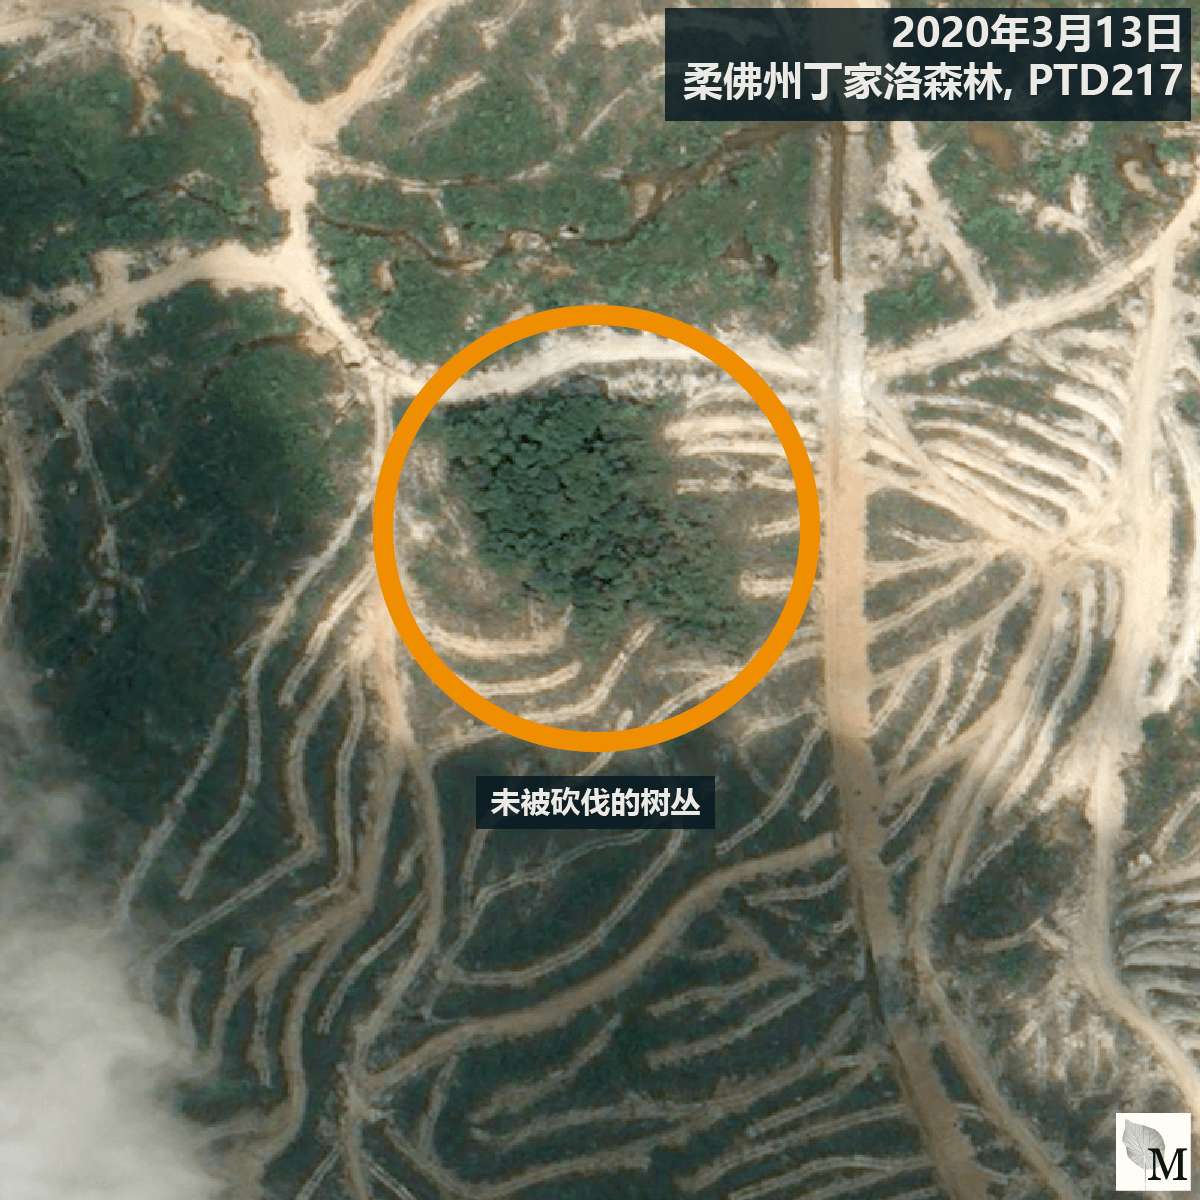 橙色圆圈显示著据报是濒临灭绝的盾状娑罗双树所在位置。（卫星图像 ©CNES 2016 Distribution Airbus DS / Earthrise）